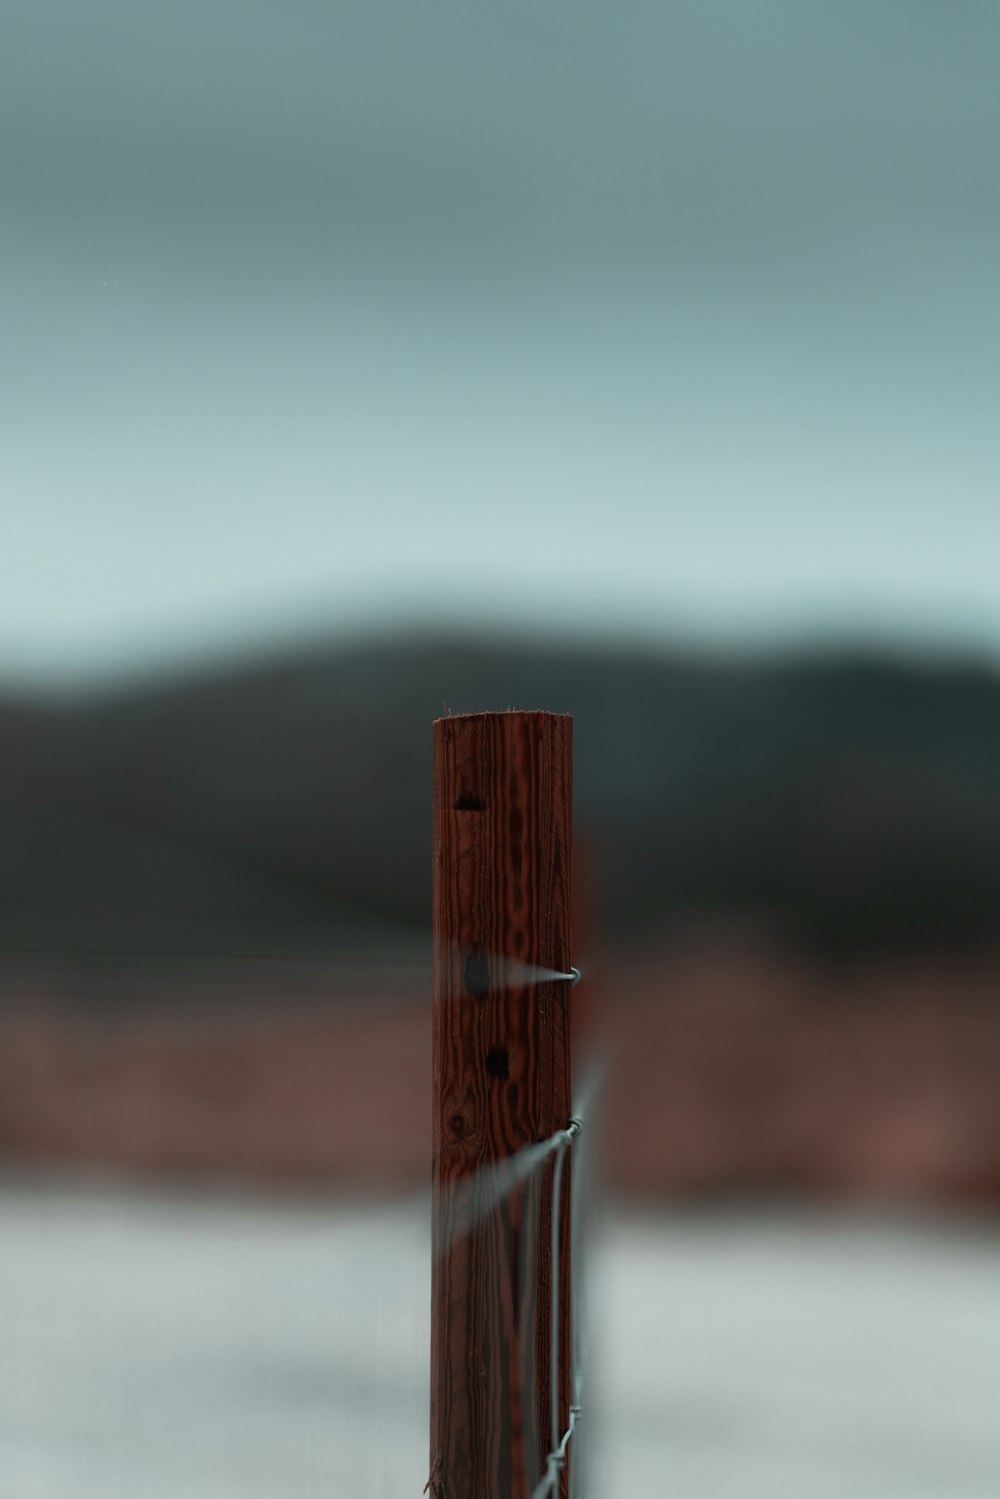 昼間の茶色の木製の柵